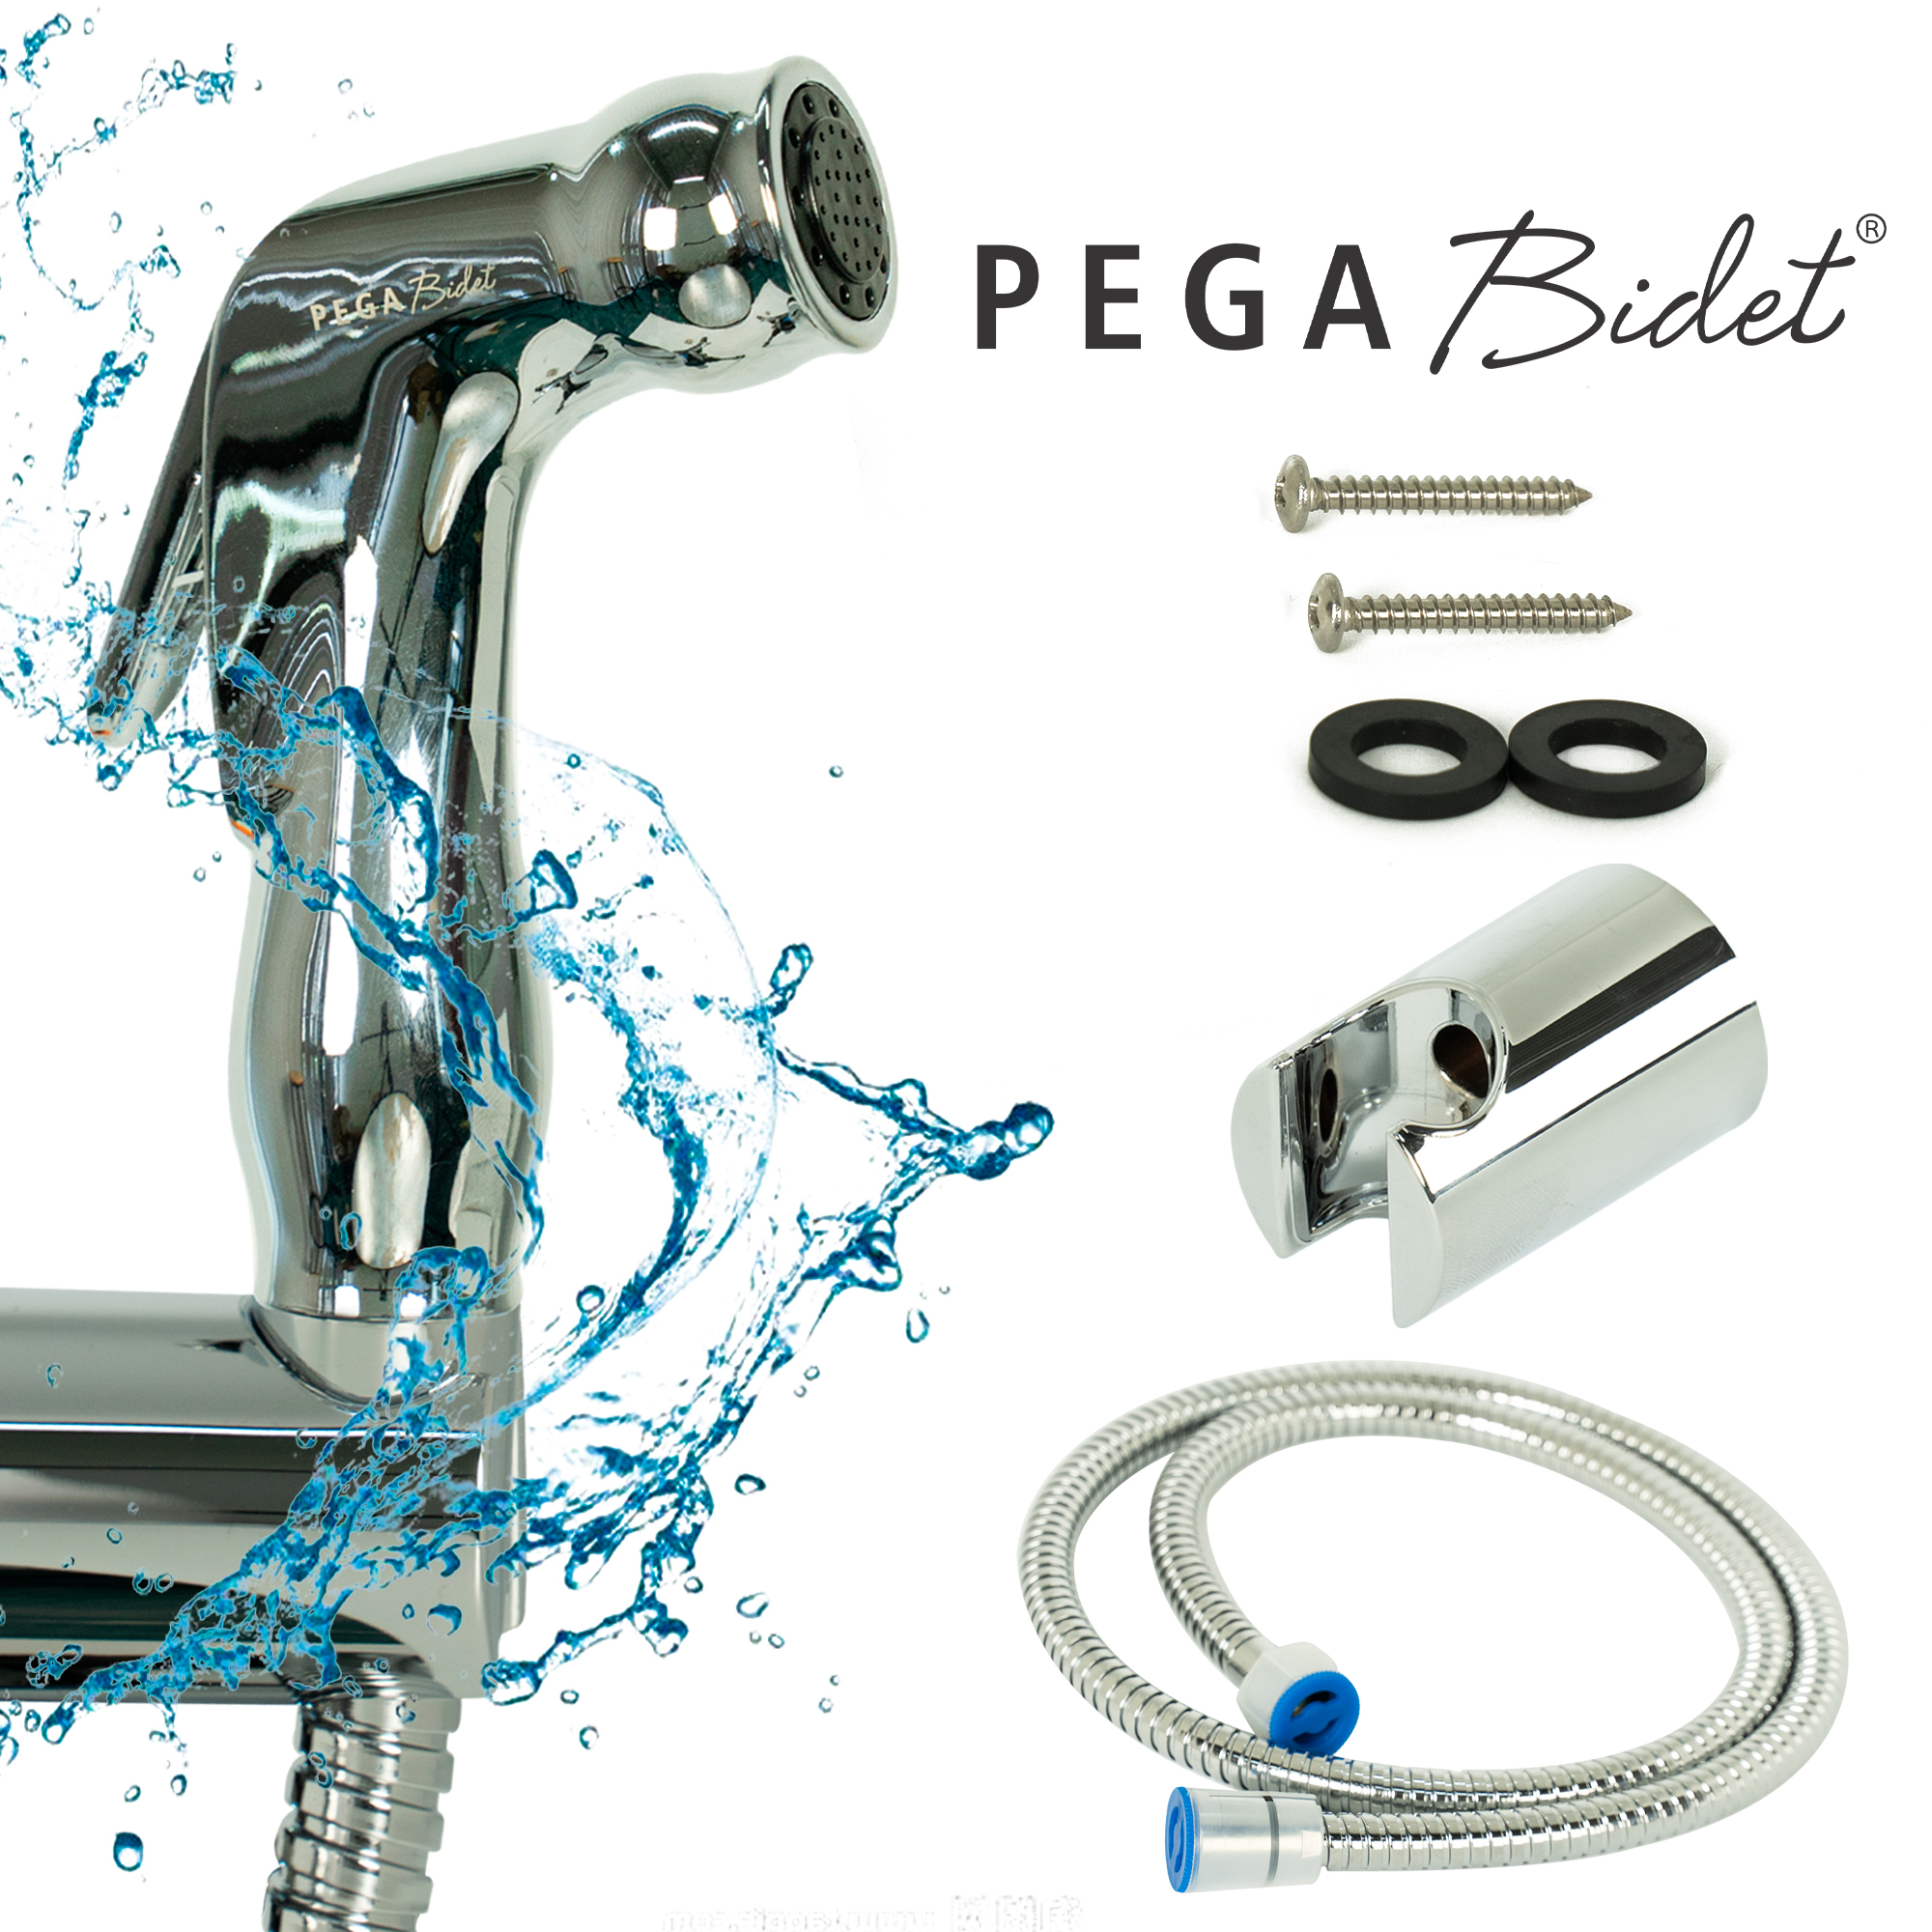 Bộ vòi xịt vệ sinh cầm tay PEGA Bidet HB500, dây cấp nước 1.2m inox 304, đầu vòi bằng nhựa mạ crôm, giá treo mạ crôm, bảo hành 12 tháng